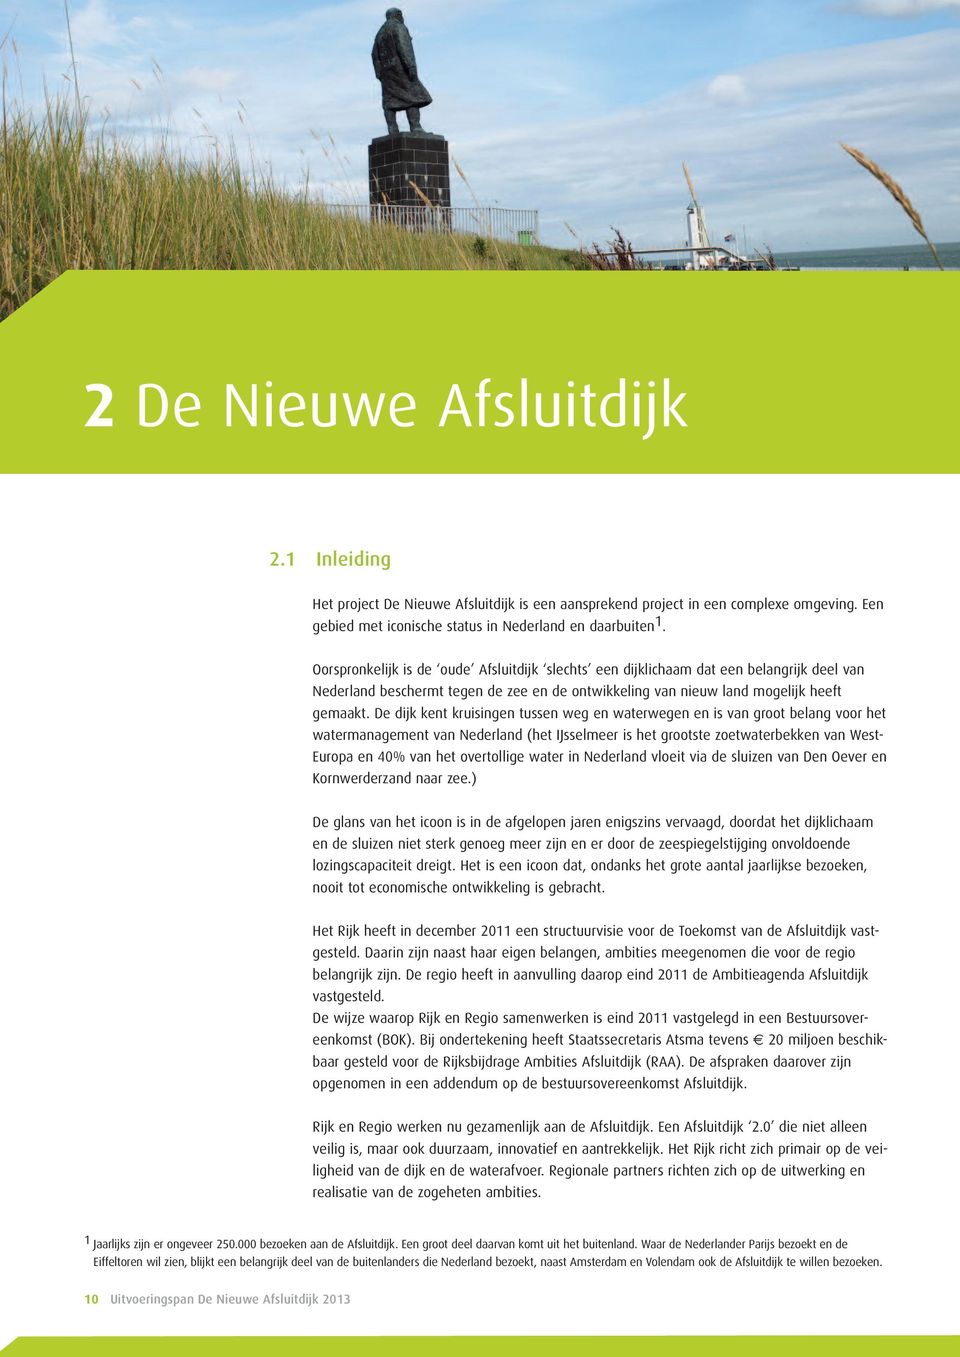 De dijk kent kruisingen tussen weg en waterwegen en is van groot belang voor het watermanagement van Nederland (het IJsselmeer is het grootste zoetwaterbekken van West- Europa en 40% van het